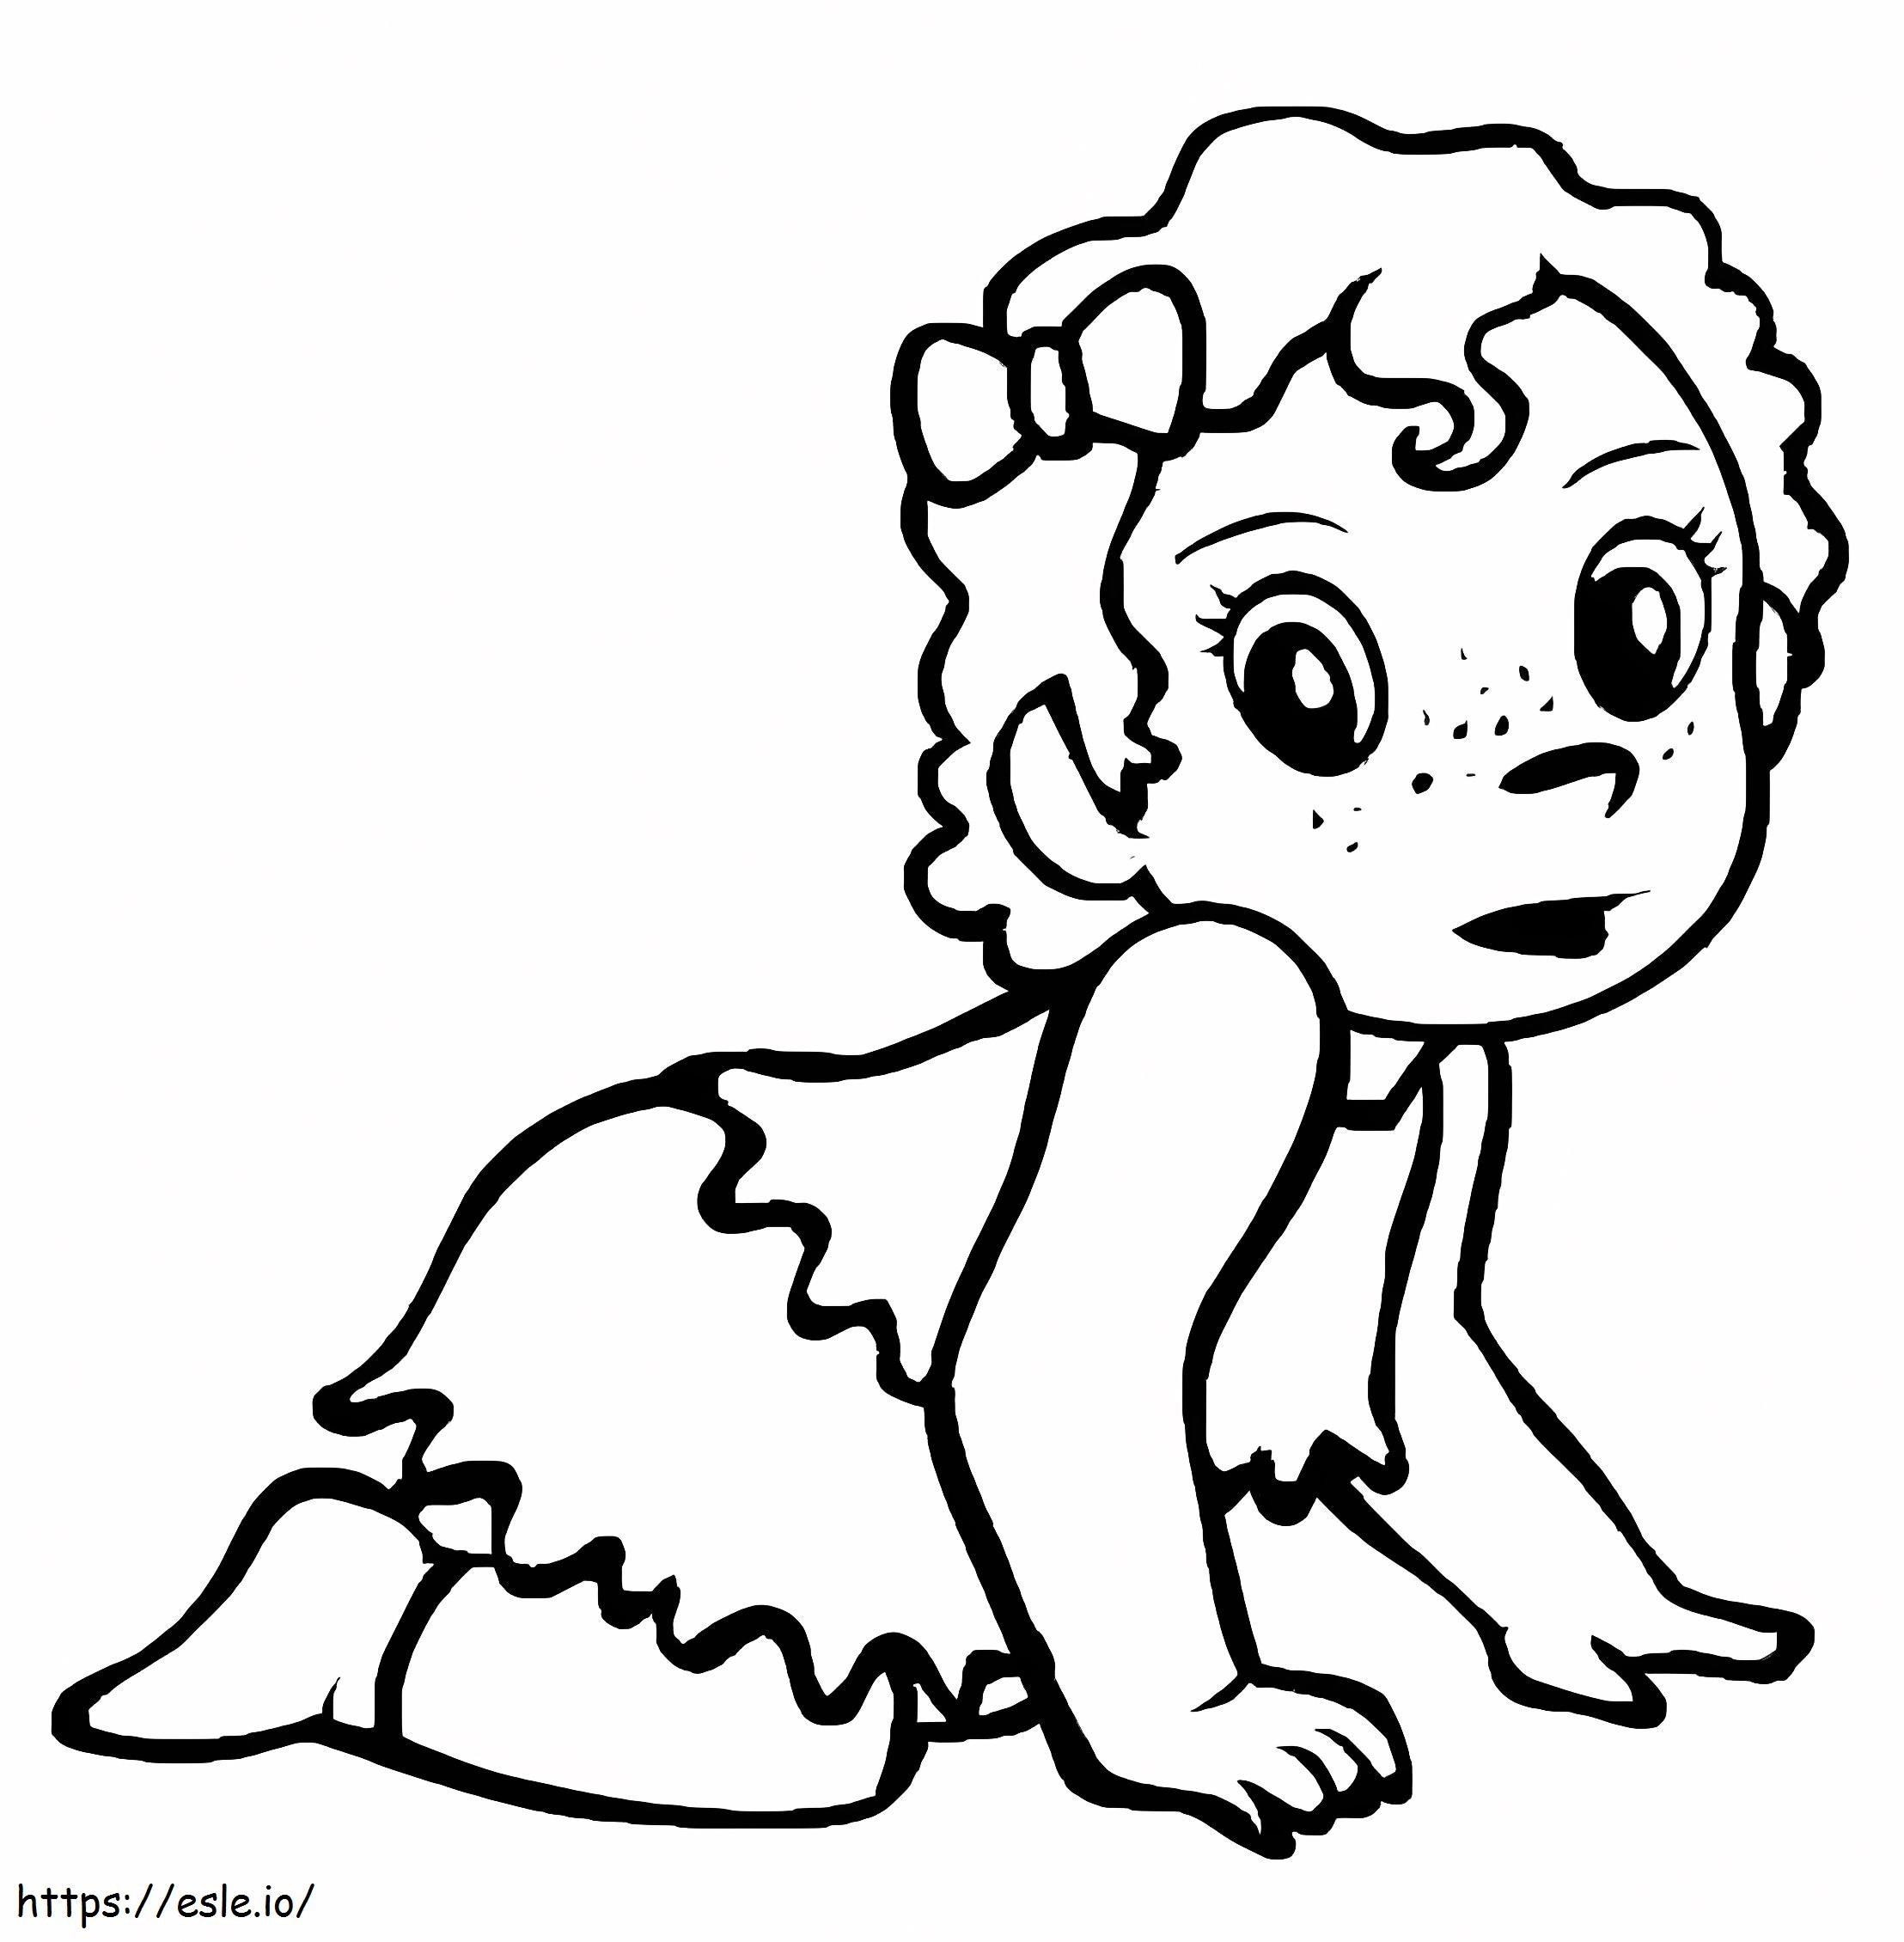 Coloriage Adorable petite fille à imprimer dessin